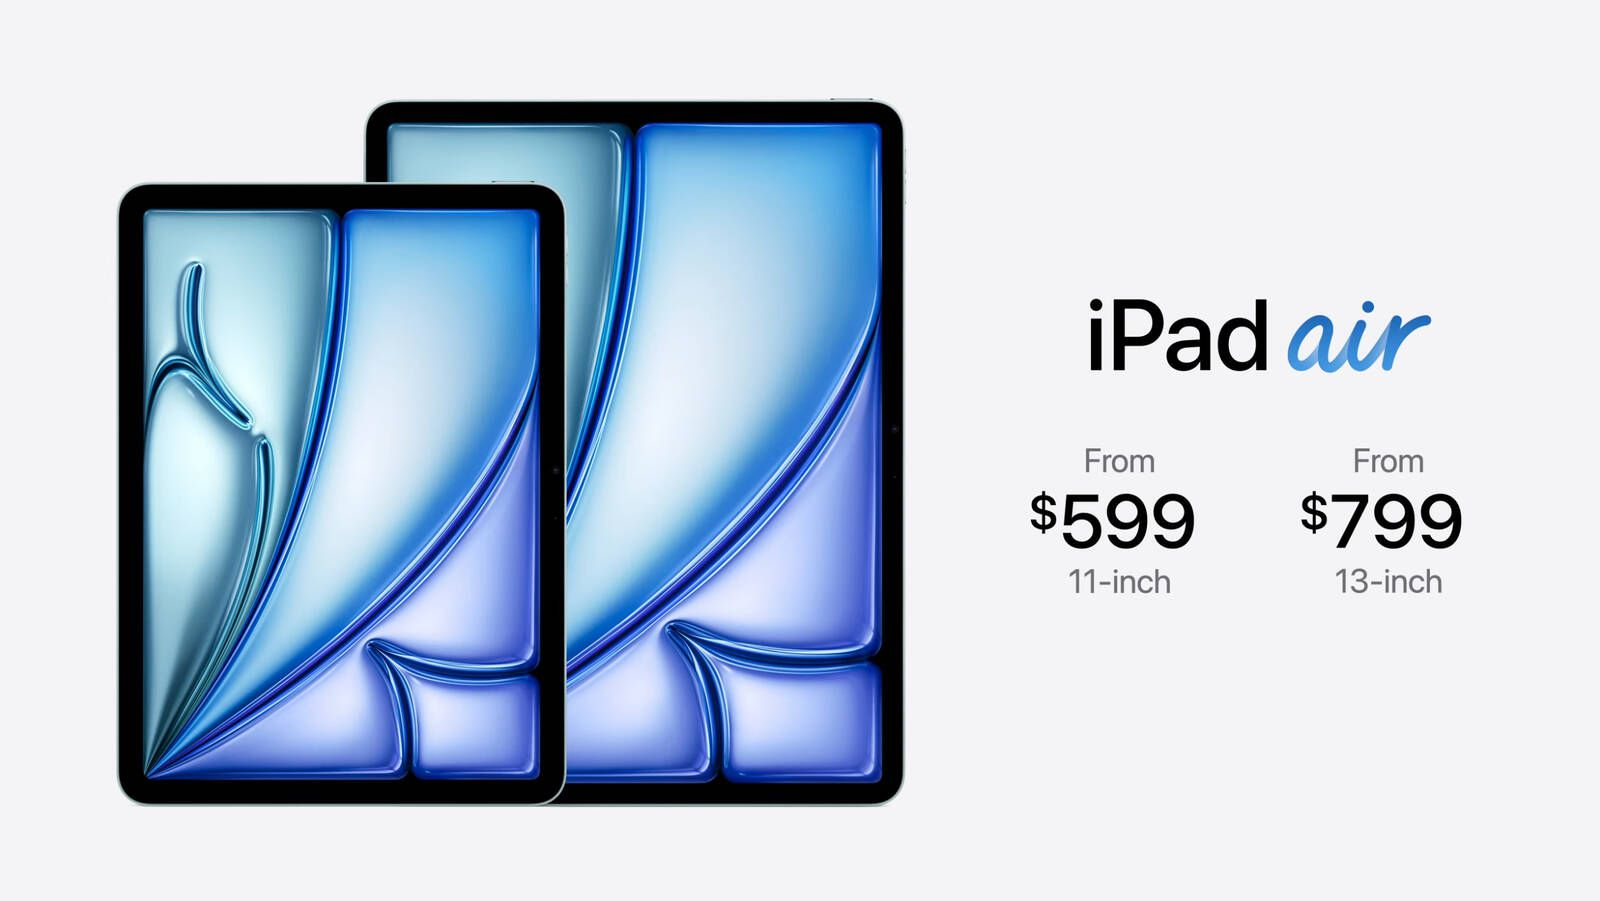 iPad Air Pricing